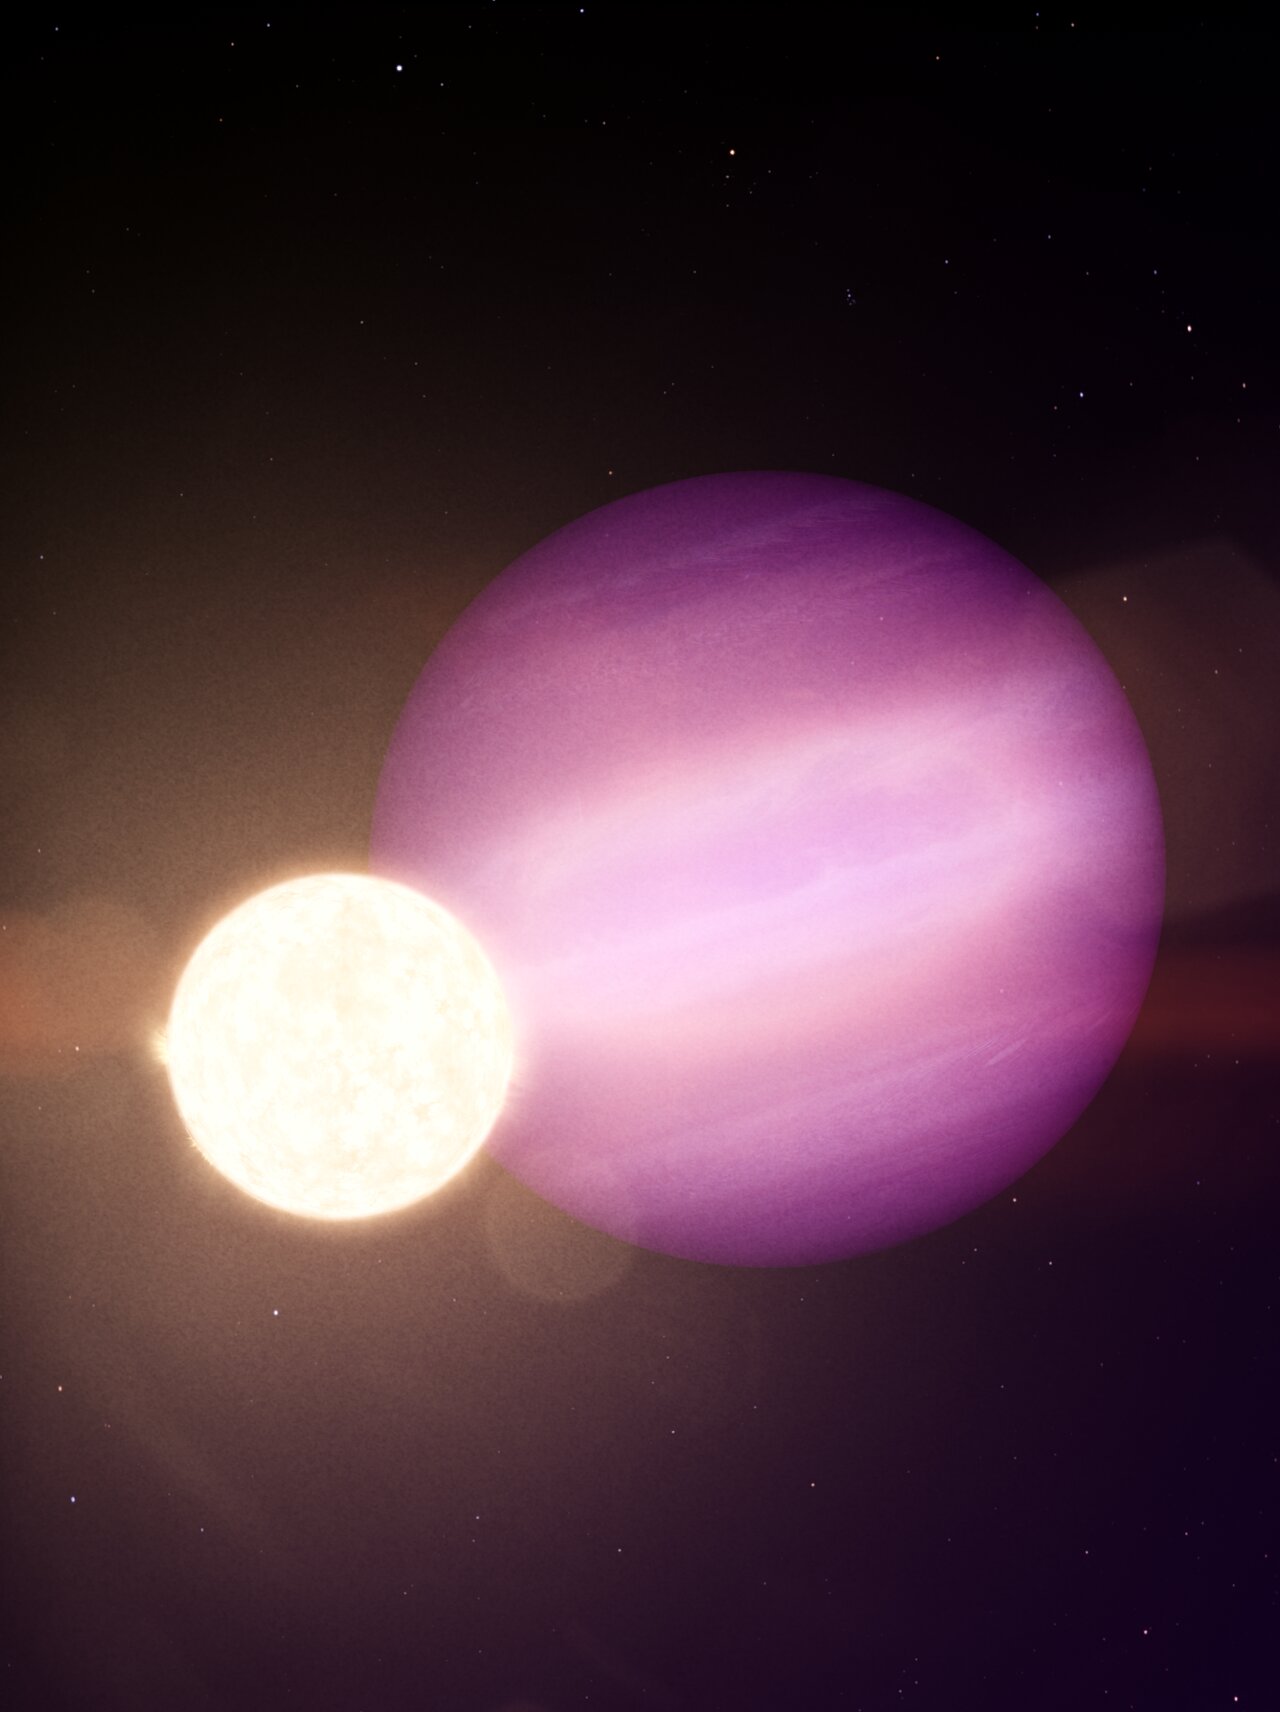 Uma imagem conceitual de um planeta na órbita de sua estrela anã branca. Crédito: NASA/JPL